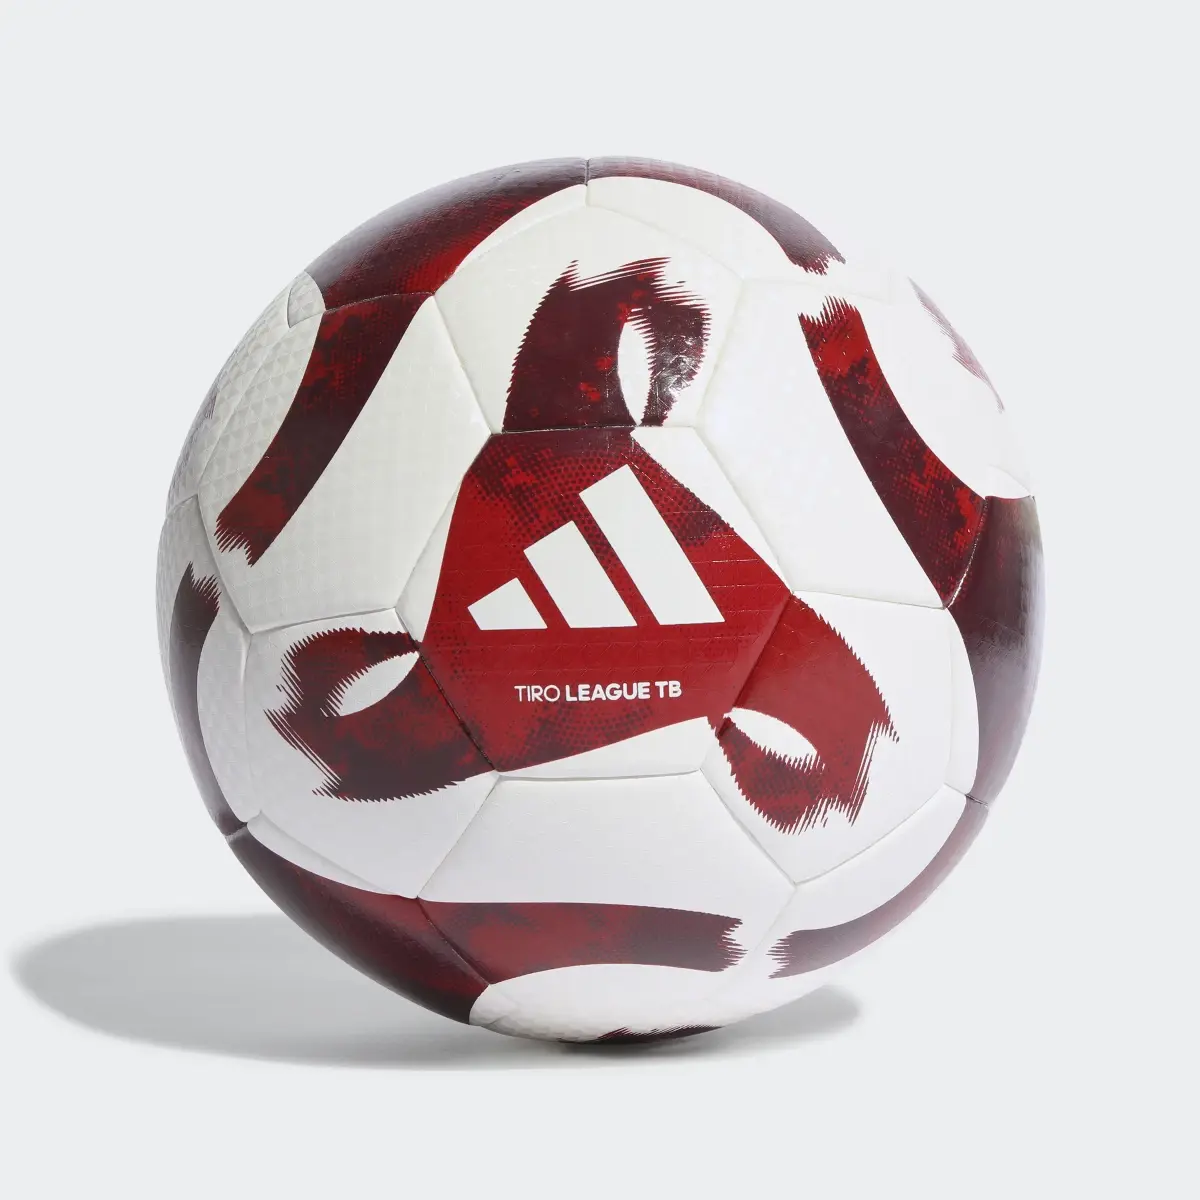 Adidas Balón Tiro League Thermally Bonded. 2